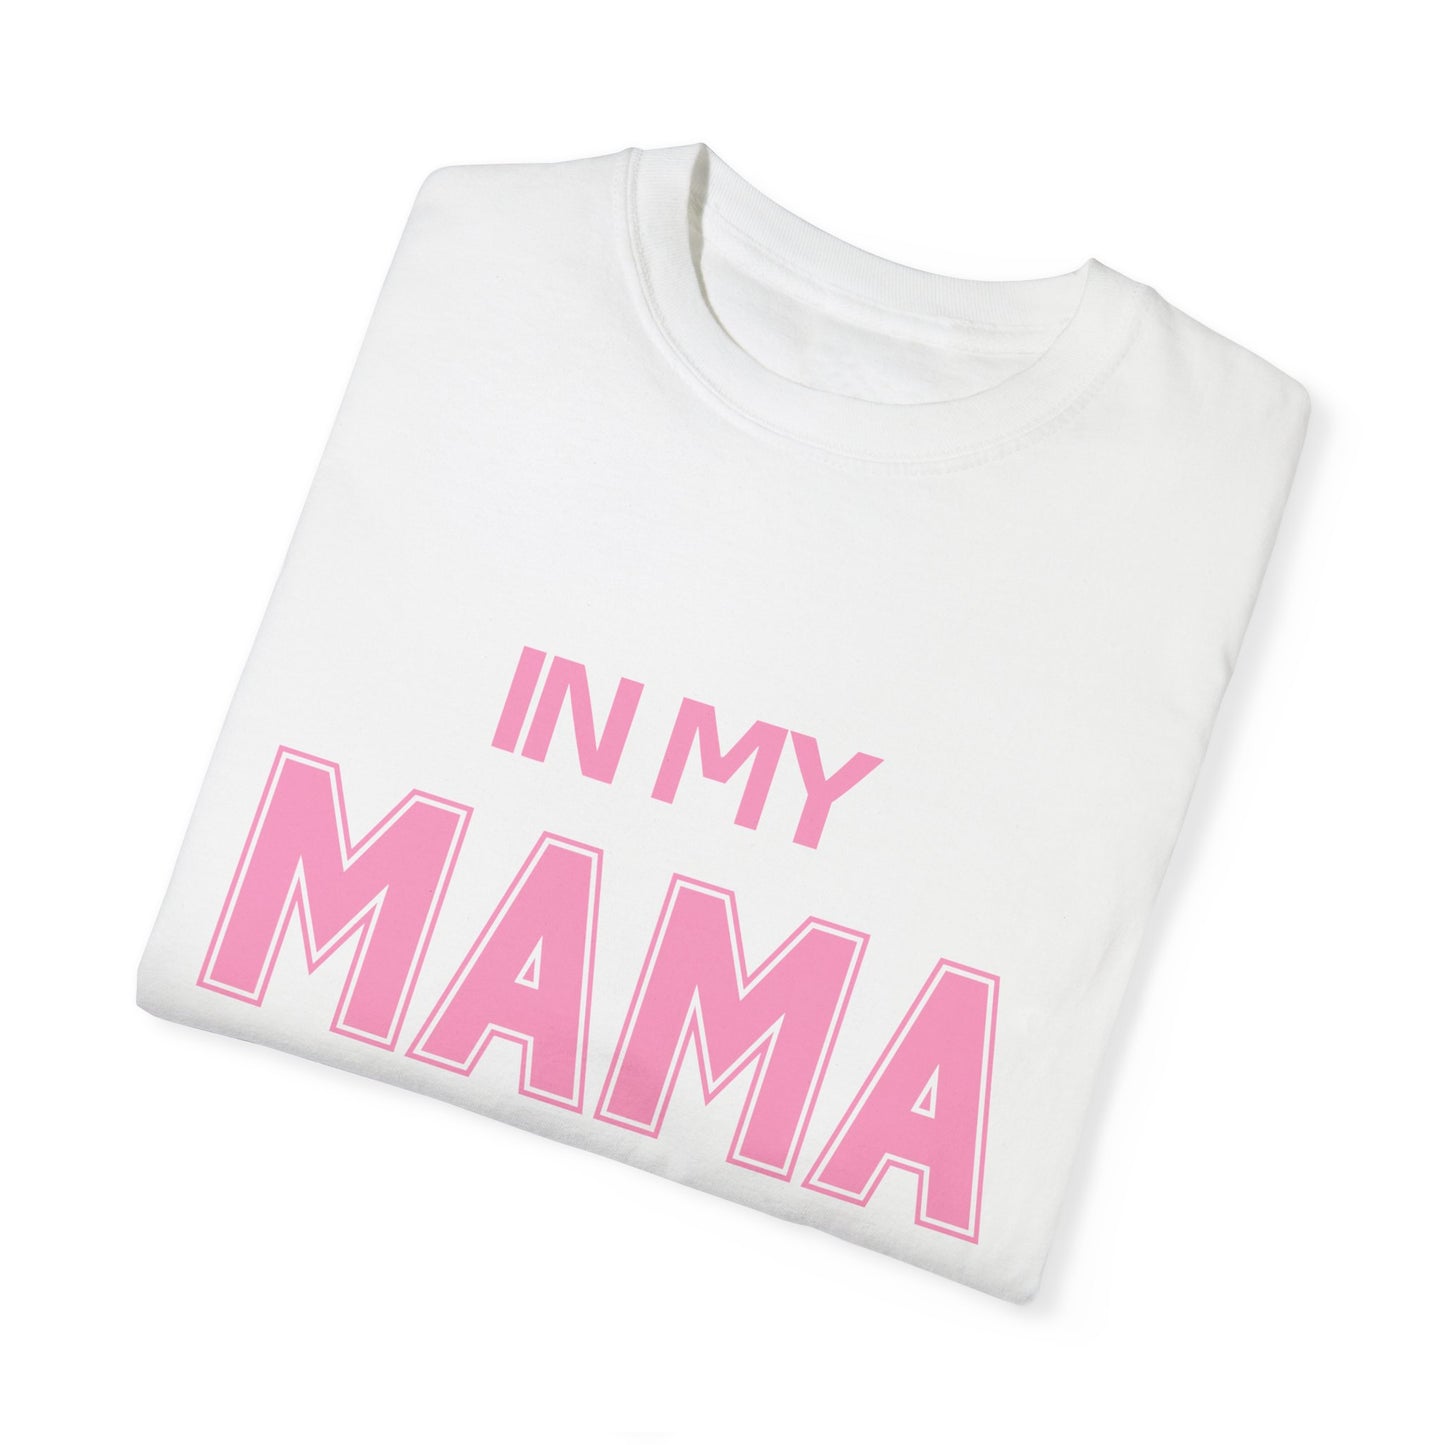 In My Mama Era Comfort Colors T-shirt